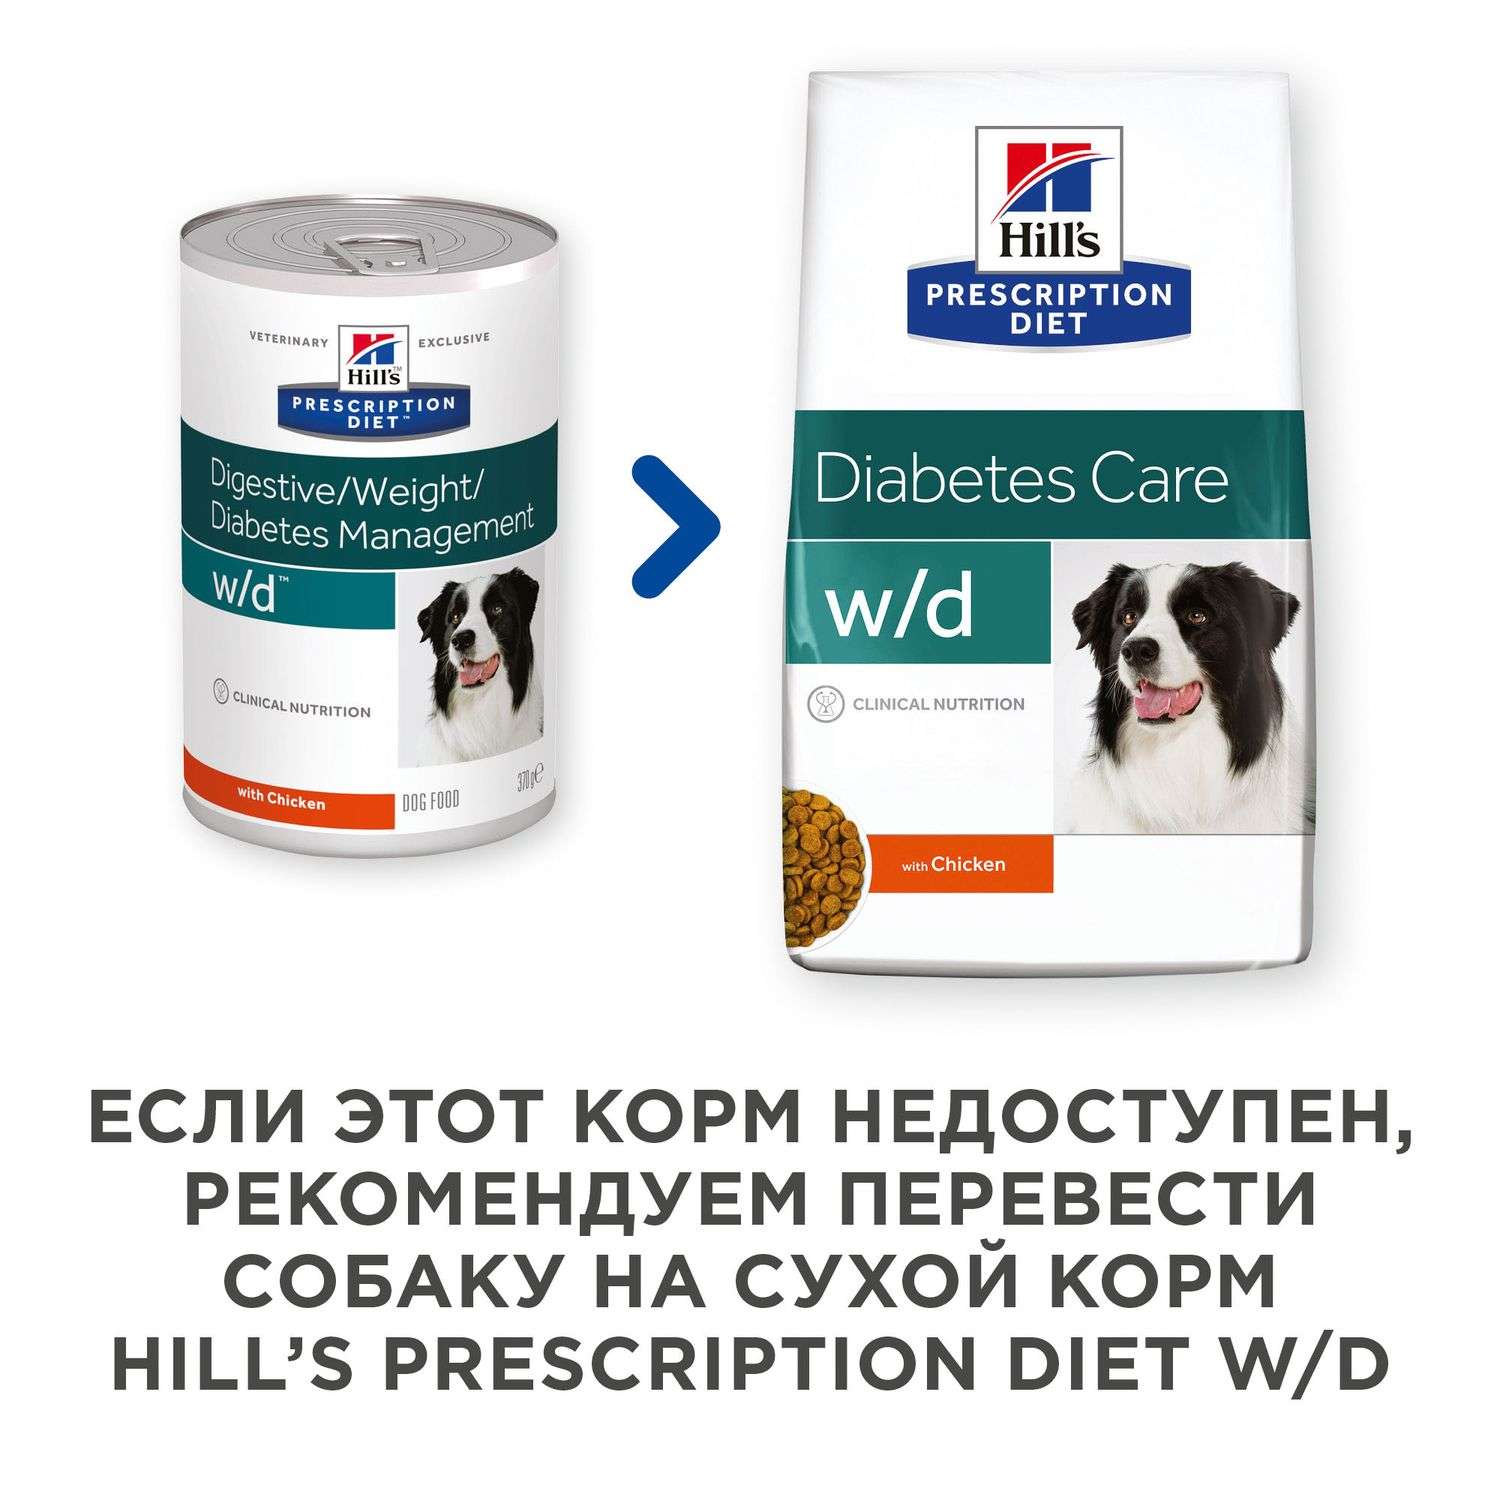 Корм для собак HILLS 370г Prescription Diet w/d Digestive/Weight Management при сахарном диабете с курицей консервировавнный - фото 4